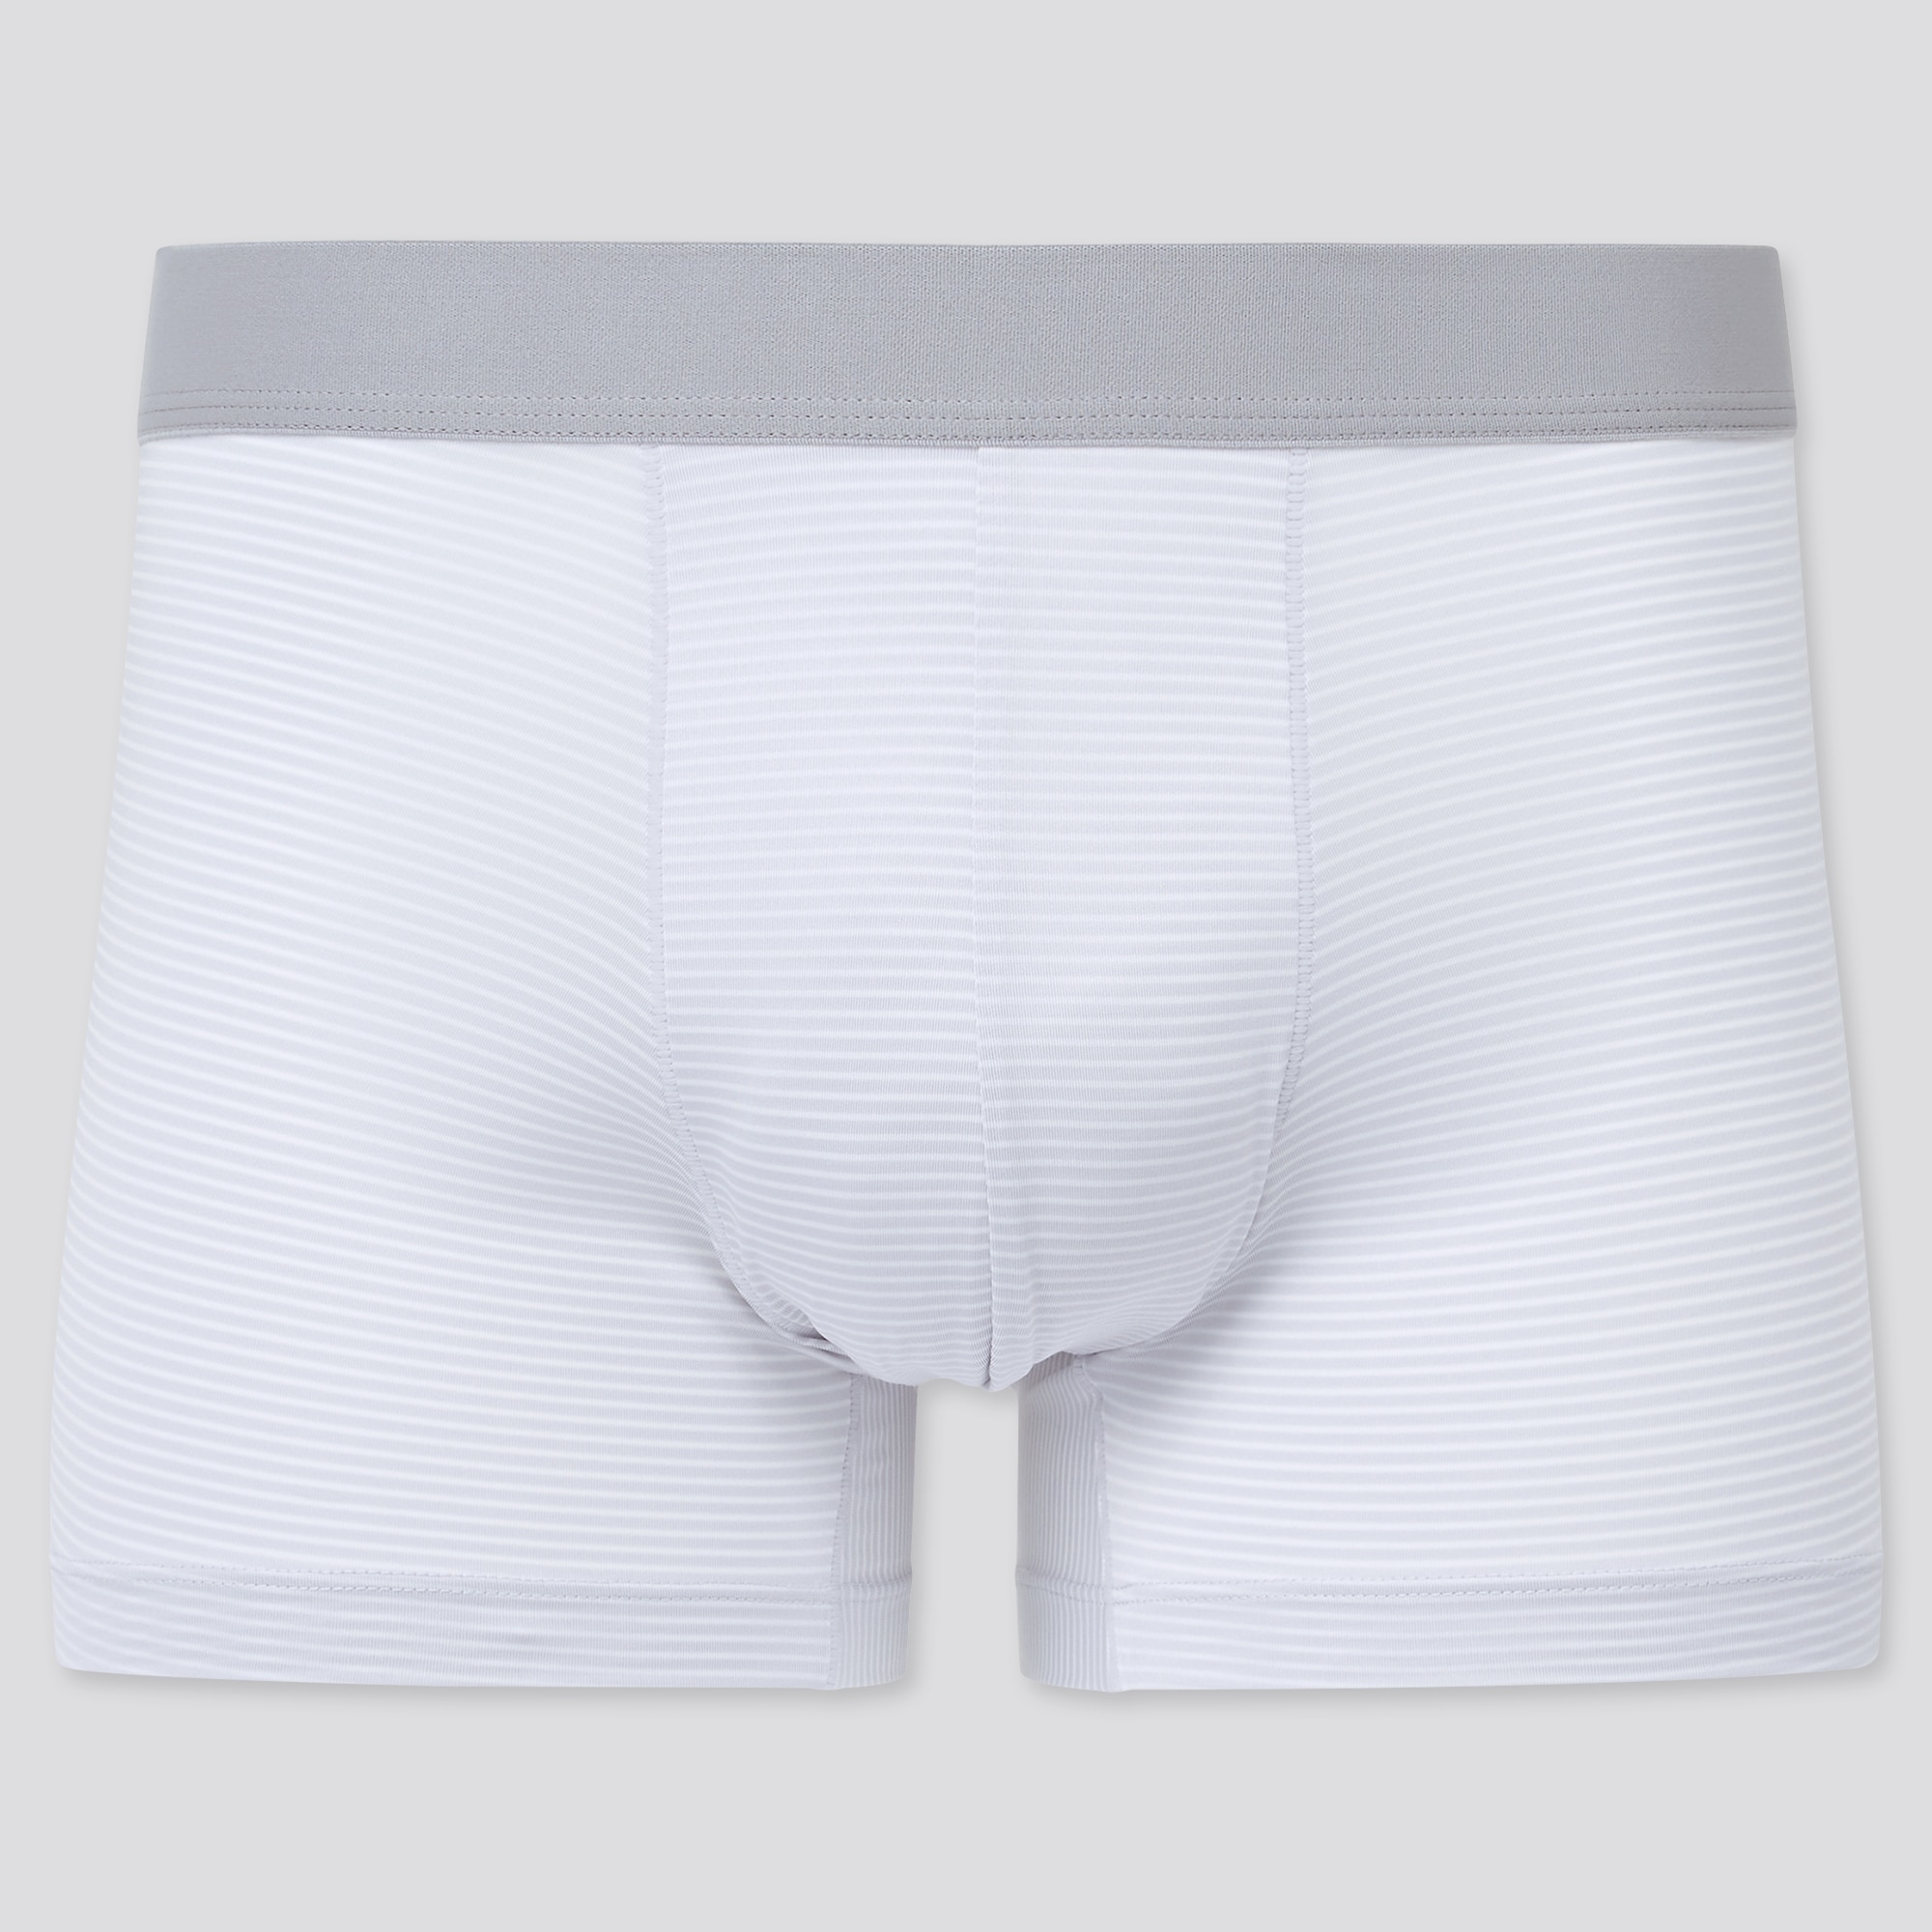 Uniqlo Canada - UNIQLO underwear has a style and design for